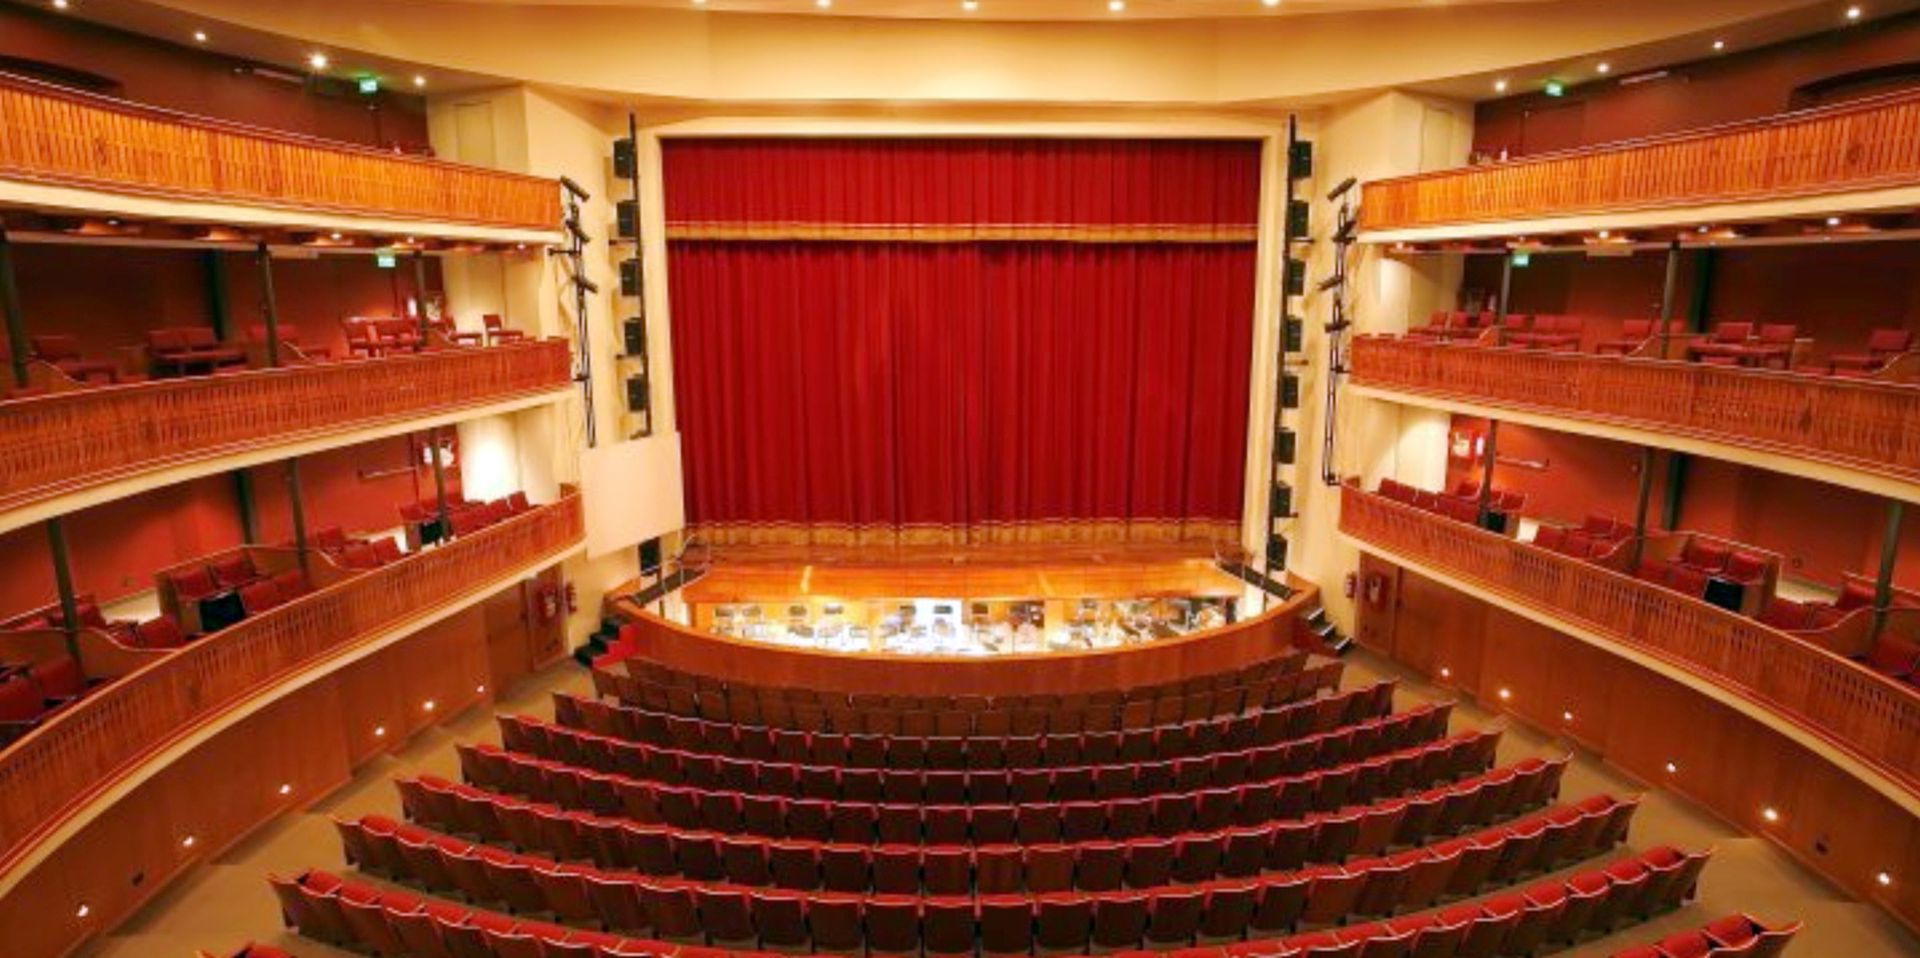 Teatro Municipal "Ignacio A. Pane"